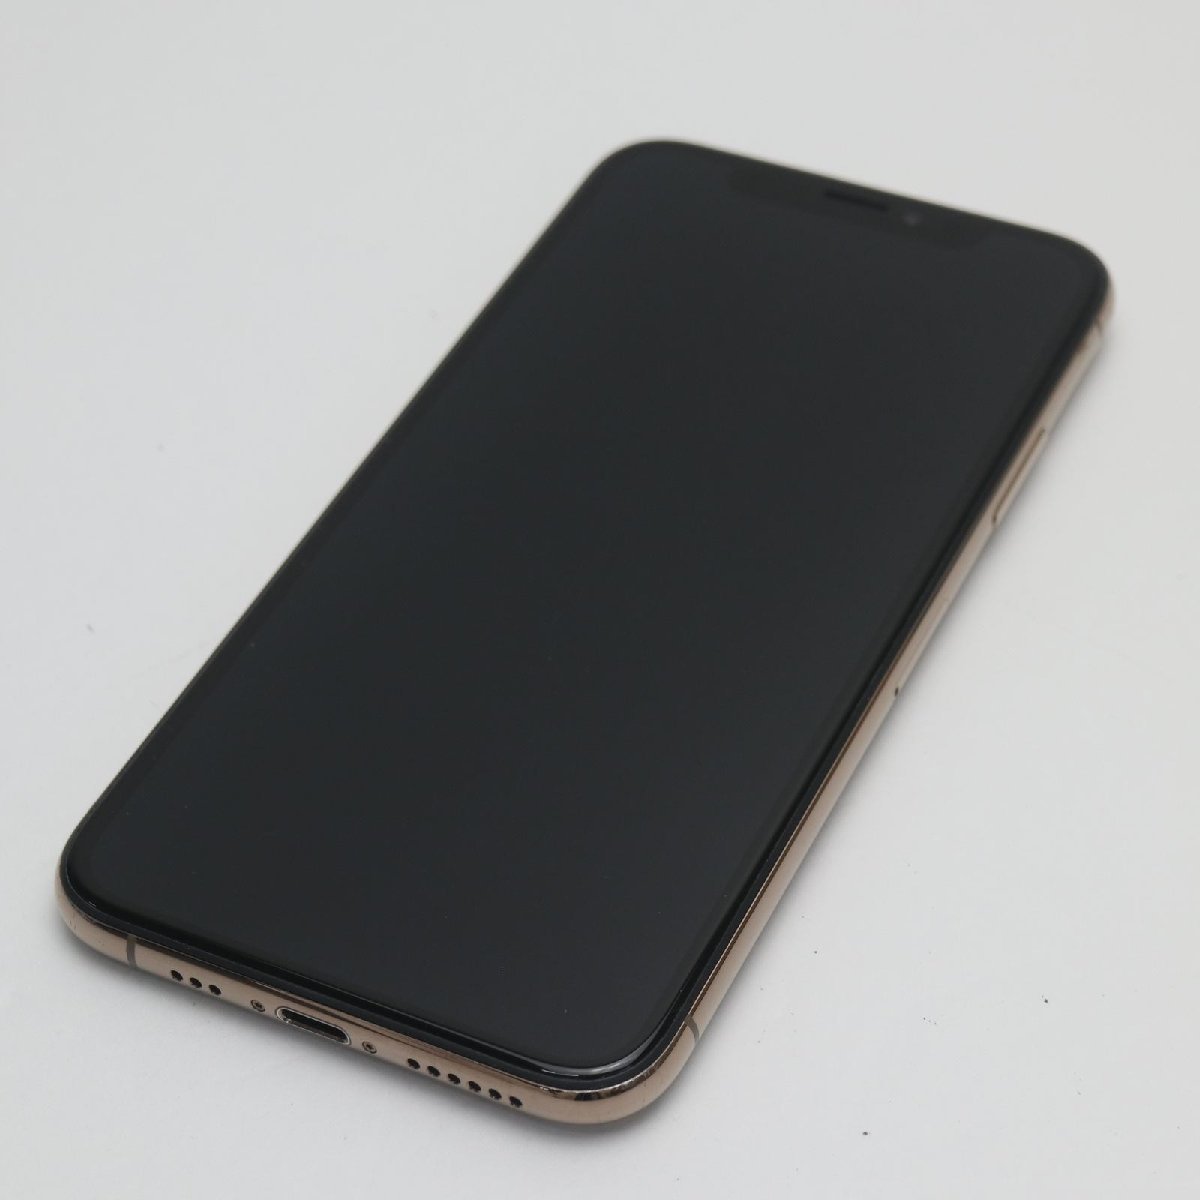 人気ブラドン スマホ ゴールド 512GB iPhoneXS SIMフリー 超美品 白